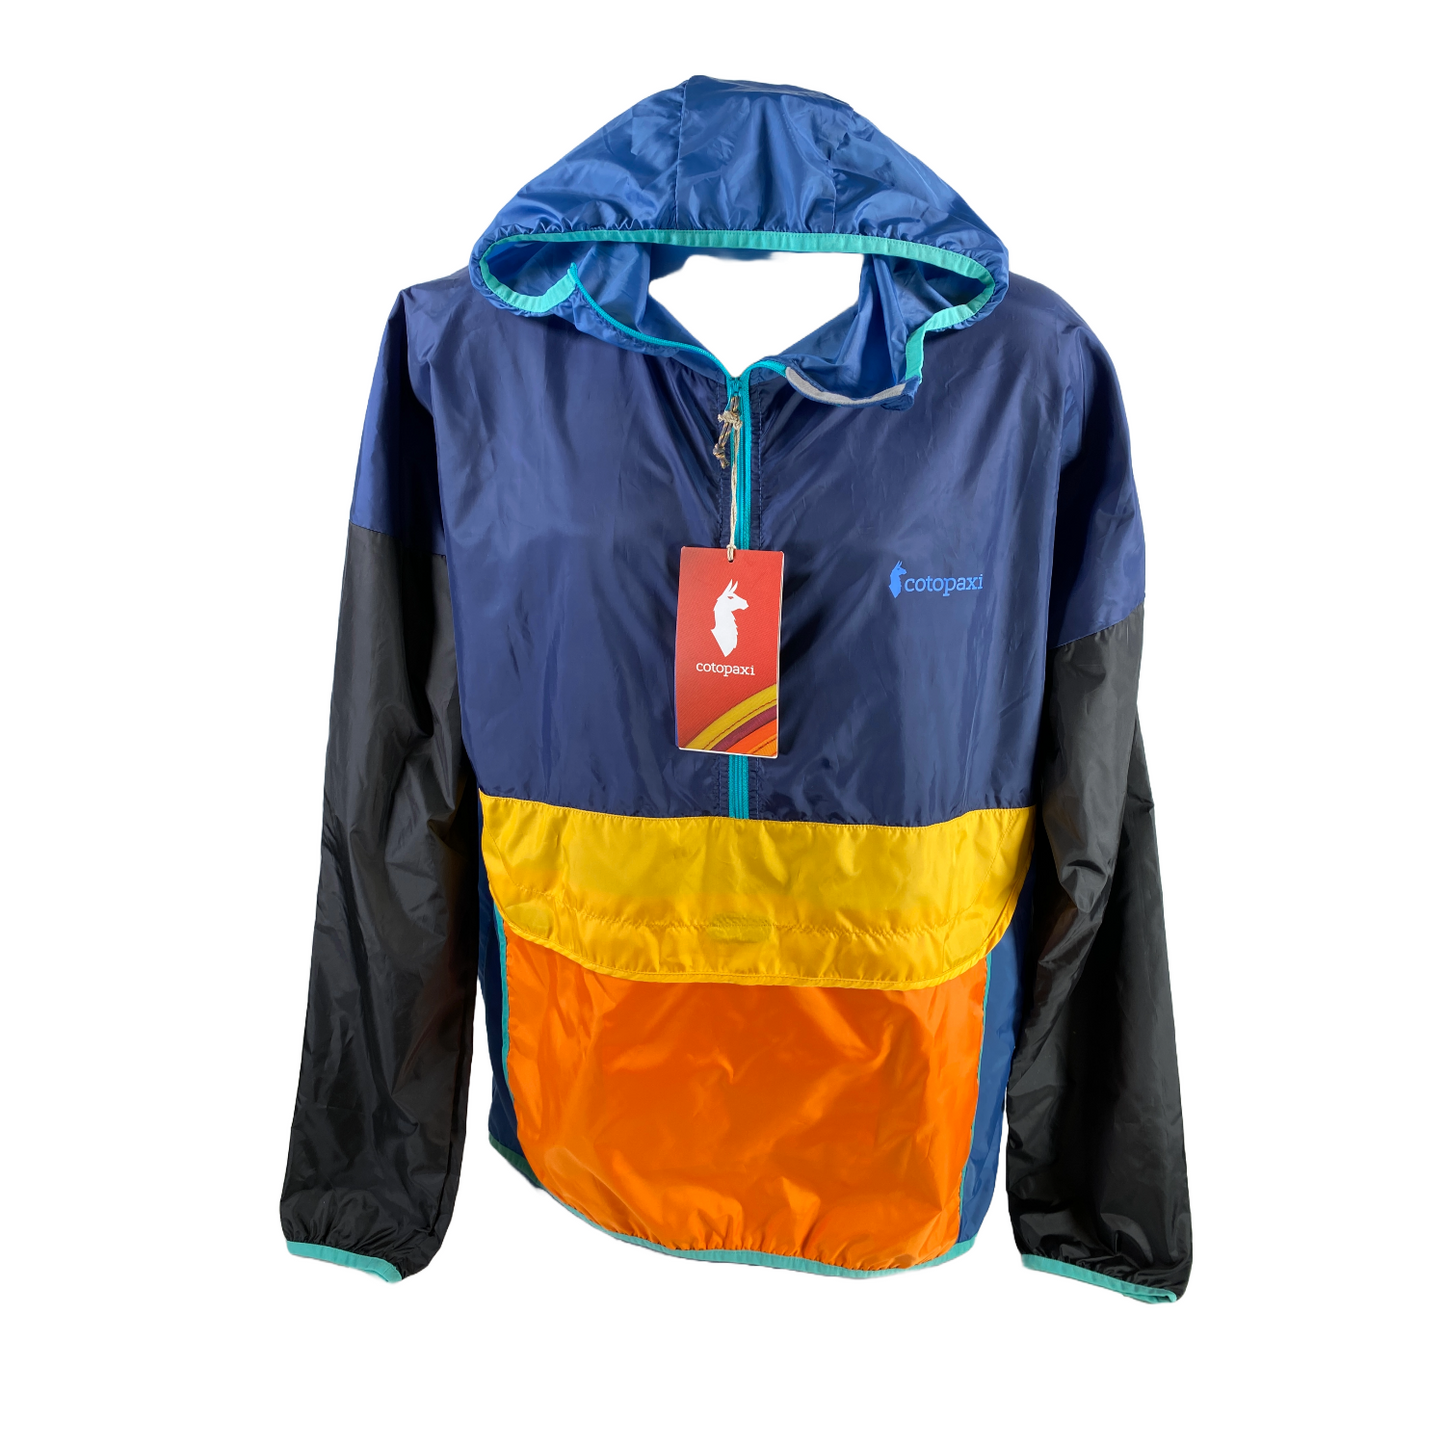 NEW Cotopaxi Men's Teca Half Zip Windbreaker Jacket